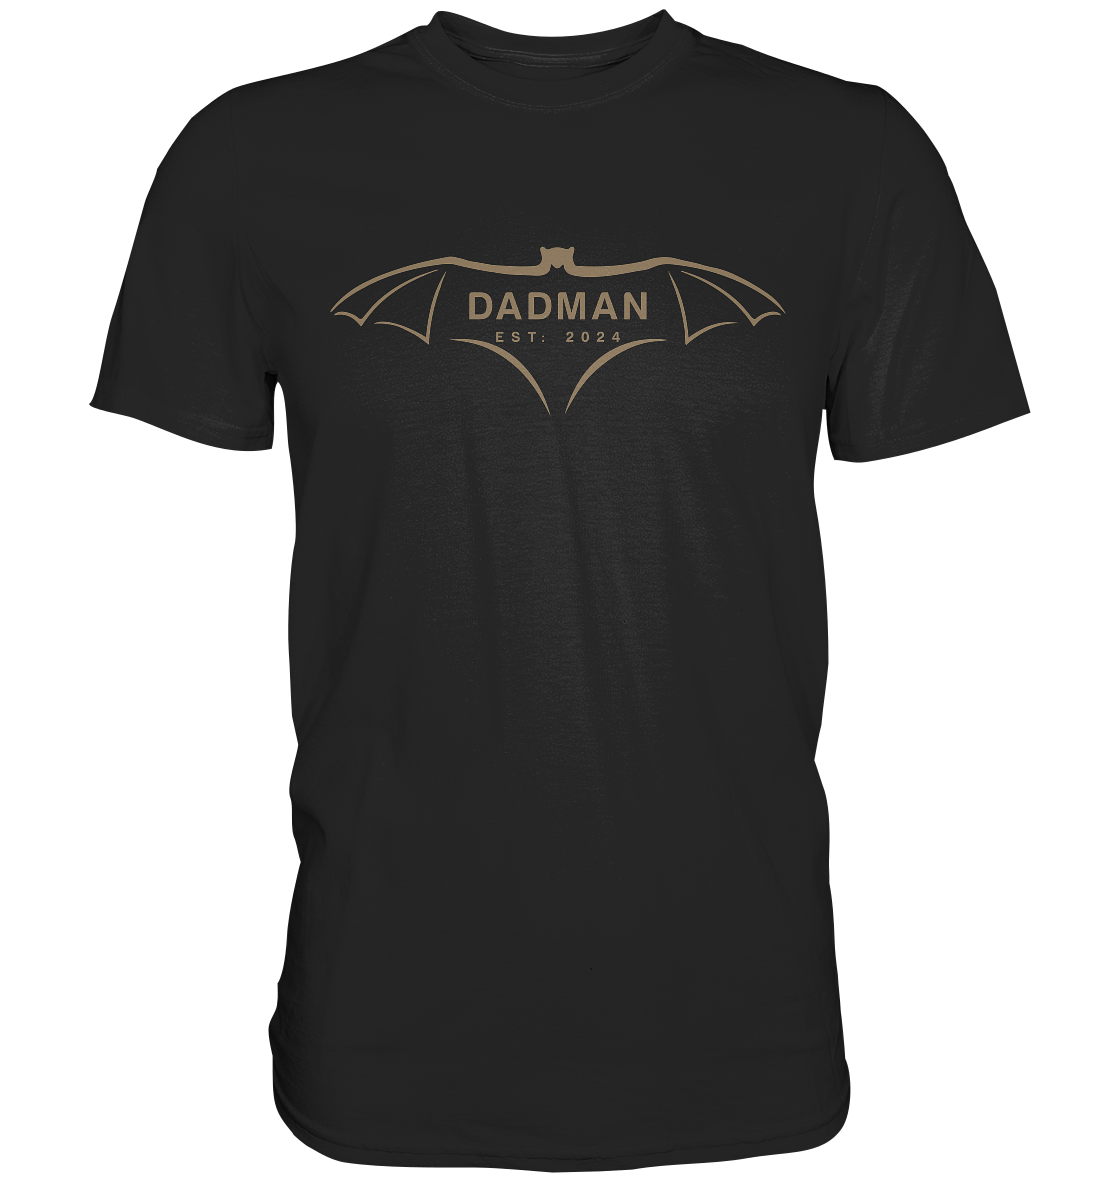 DADMAN 2024 Premium Edition, dato kan tilpasses - Premium skjorte